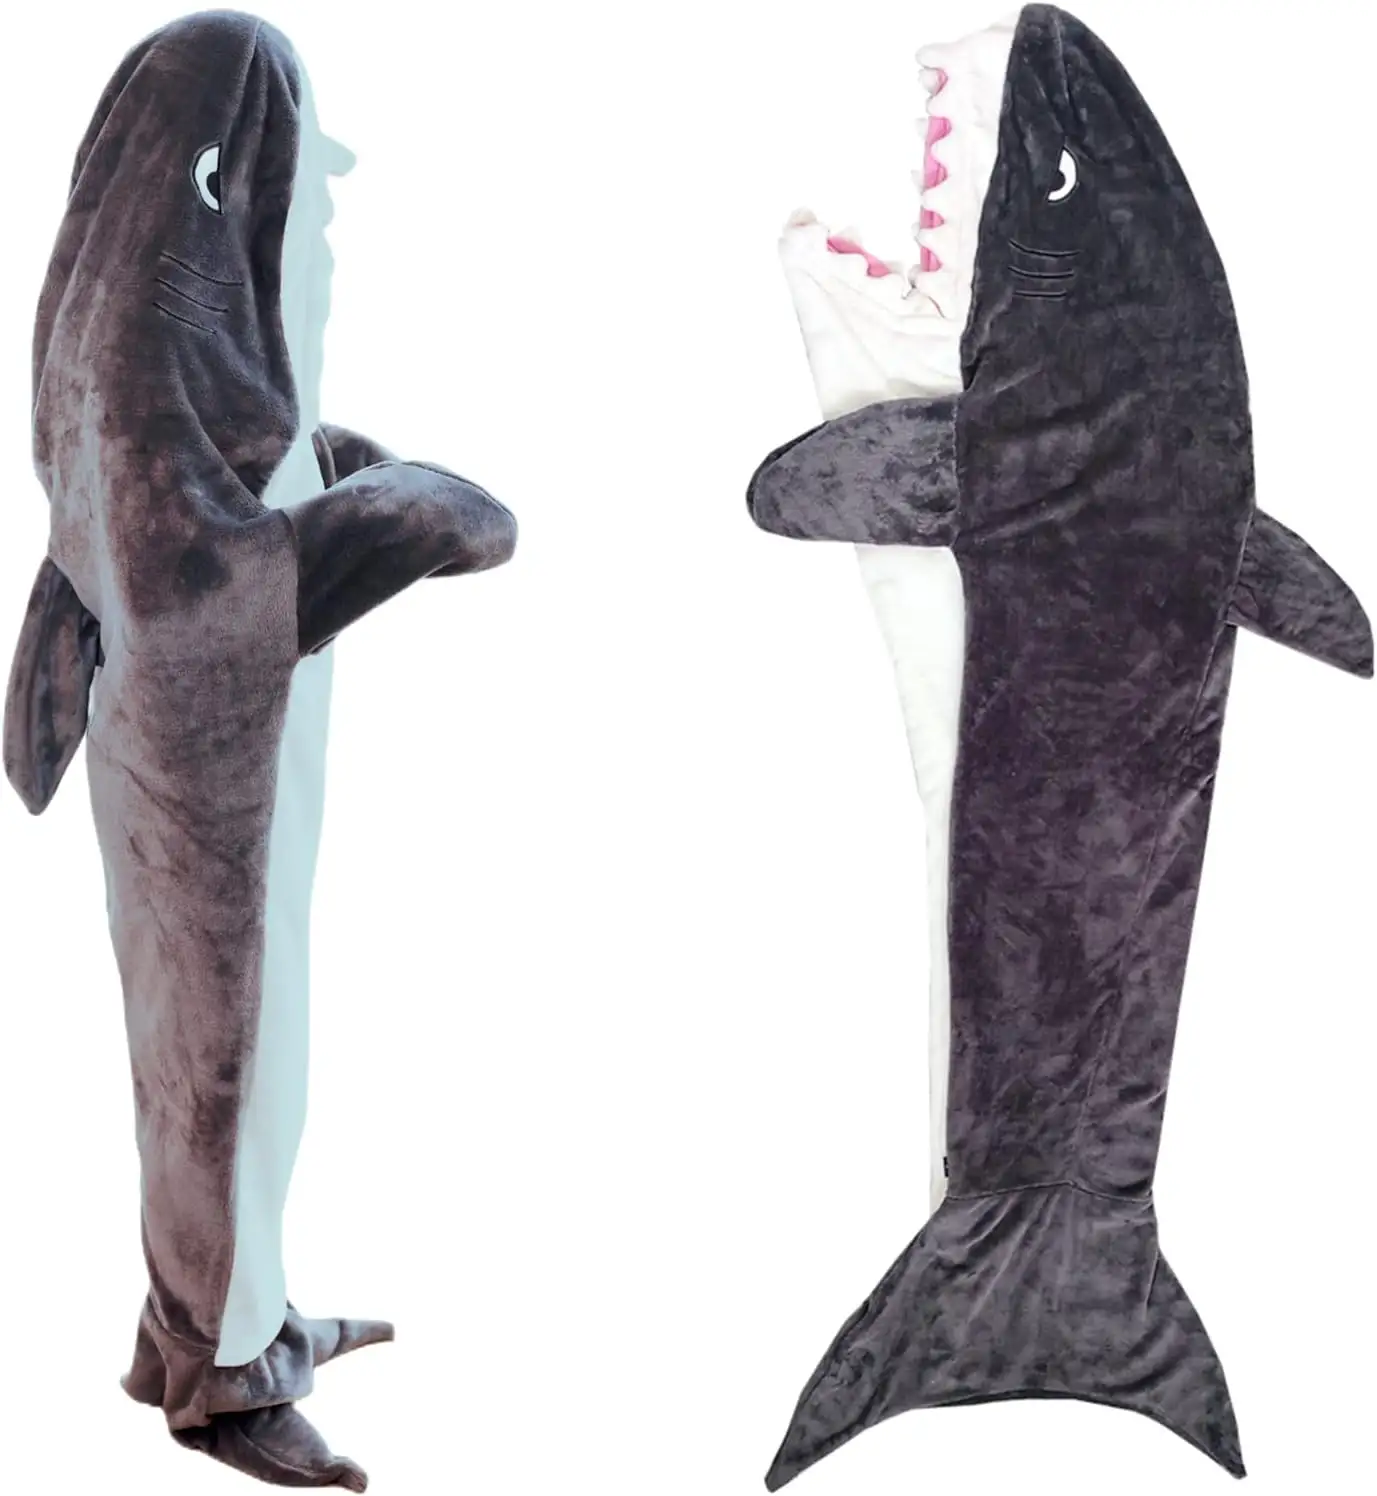 Grosir selimut hiu flanel lembut nyaman Kantung tidur hiu dapat dipakai selimut bertudung kostum hiu untuk hadiah pria wanita dewasa